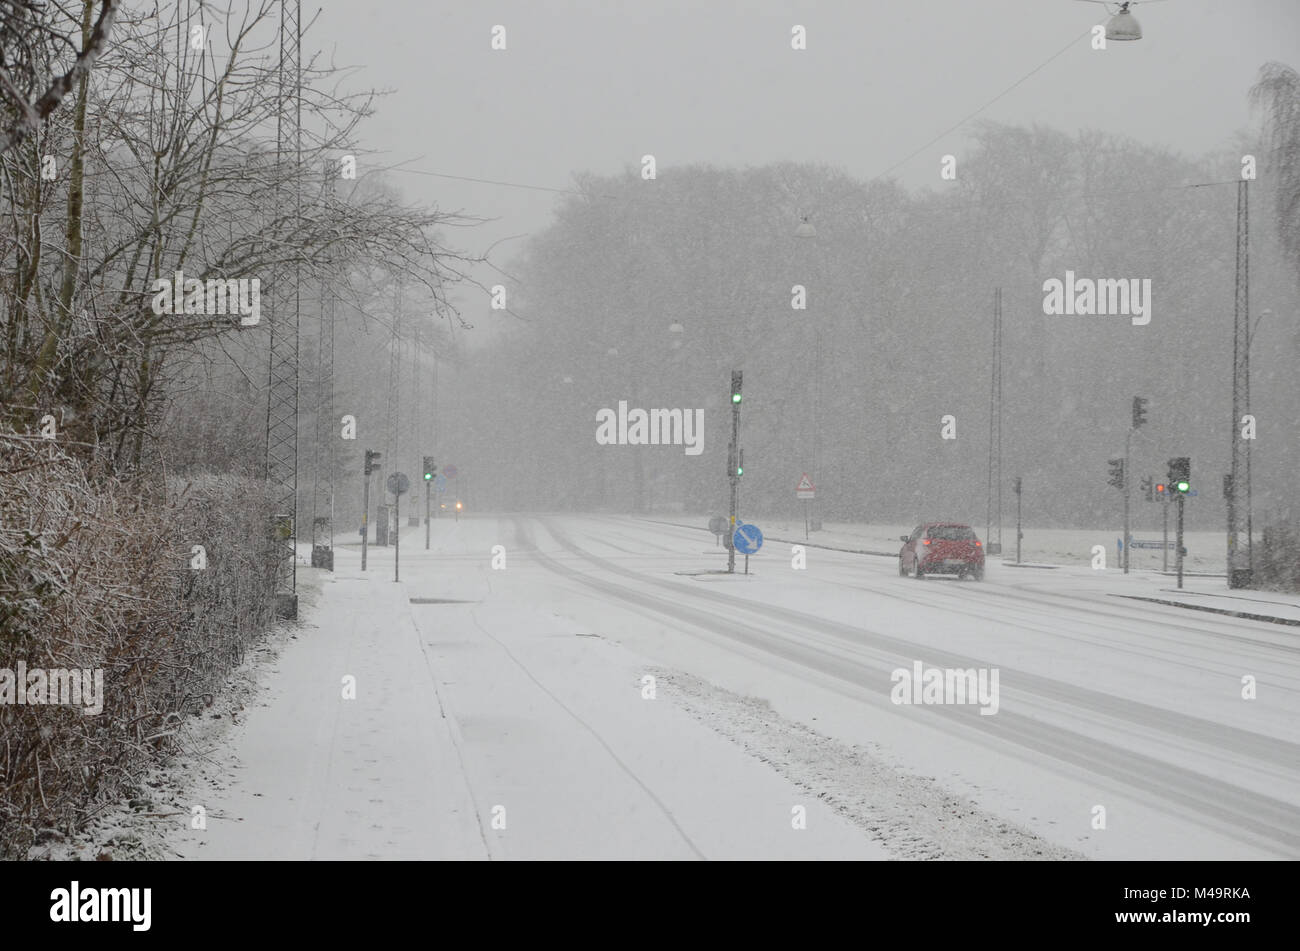 Spärlicher Verkehr langsam, auf einer Straße bei starkem Schneefall, verminderter Sicht verursacht. Stockfoto